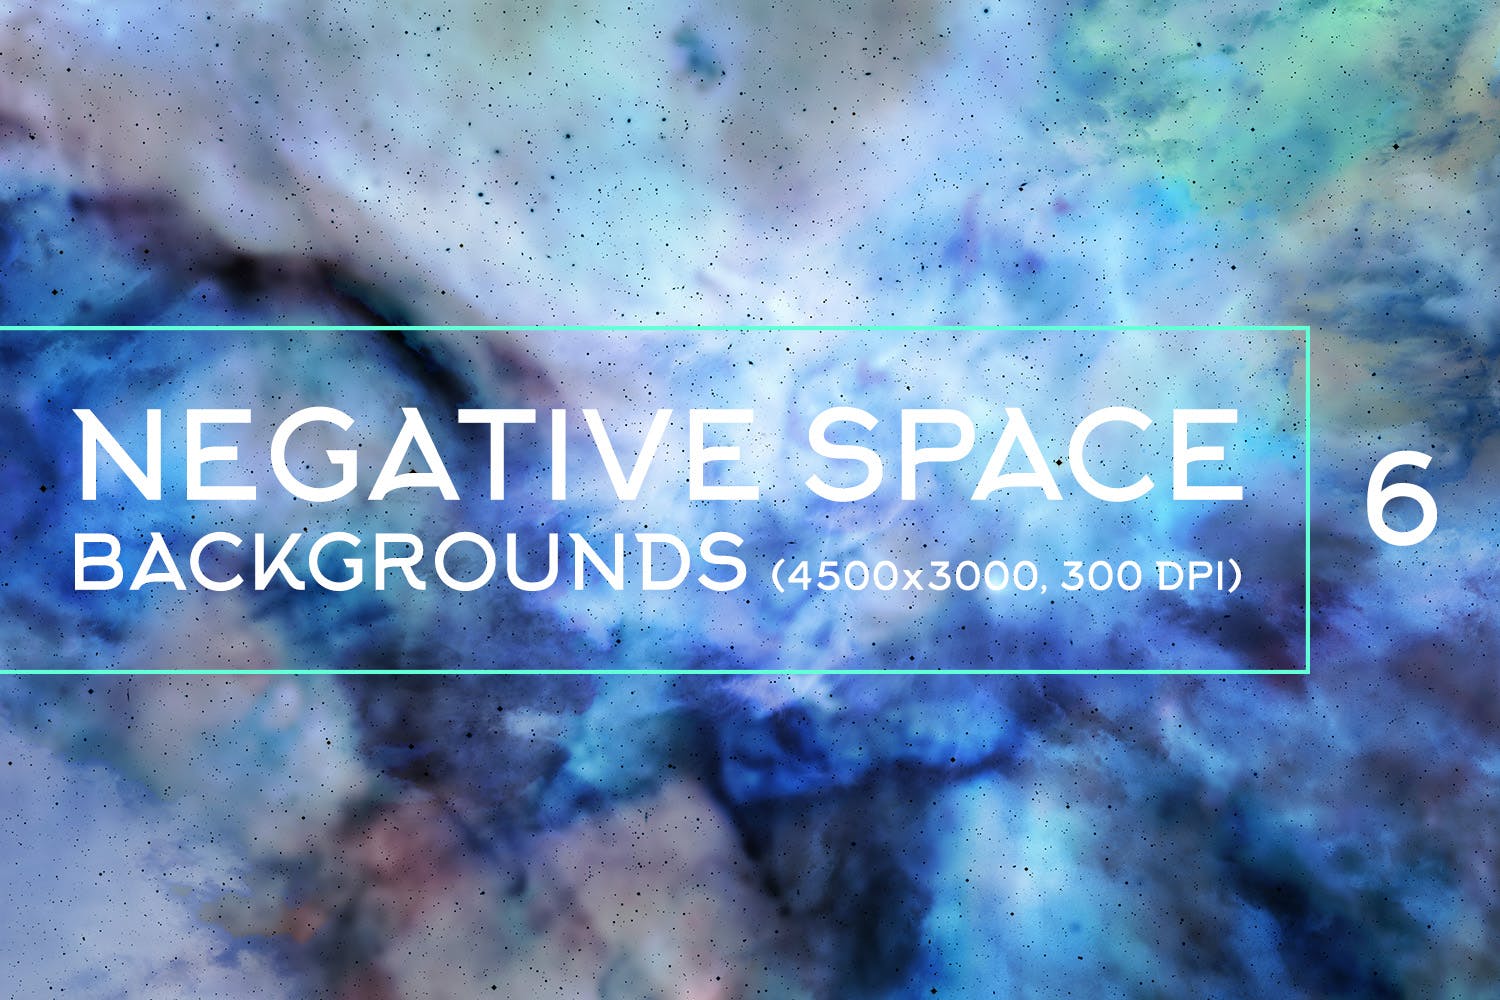 负空间水彩肌理纹理背景素材包v6 Negative Space Backgrounds Vol.6插图(7)